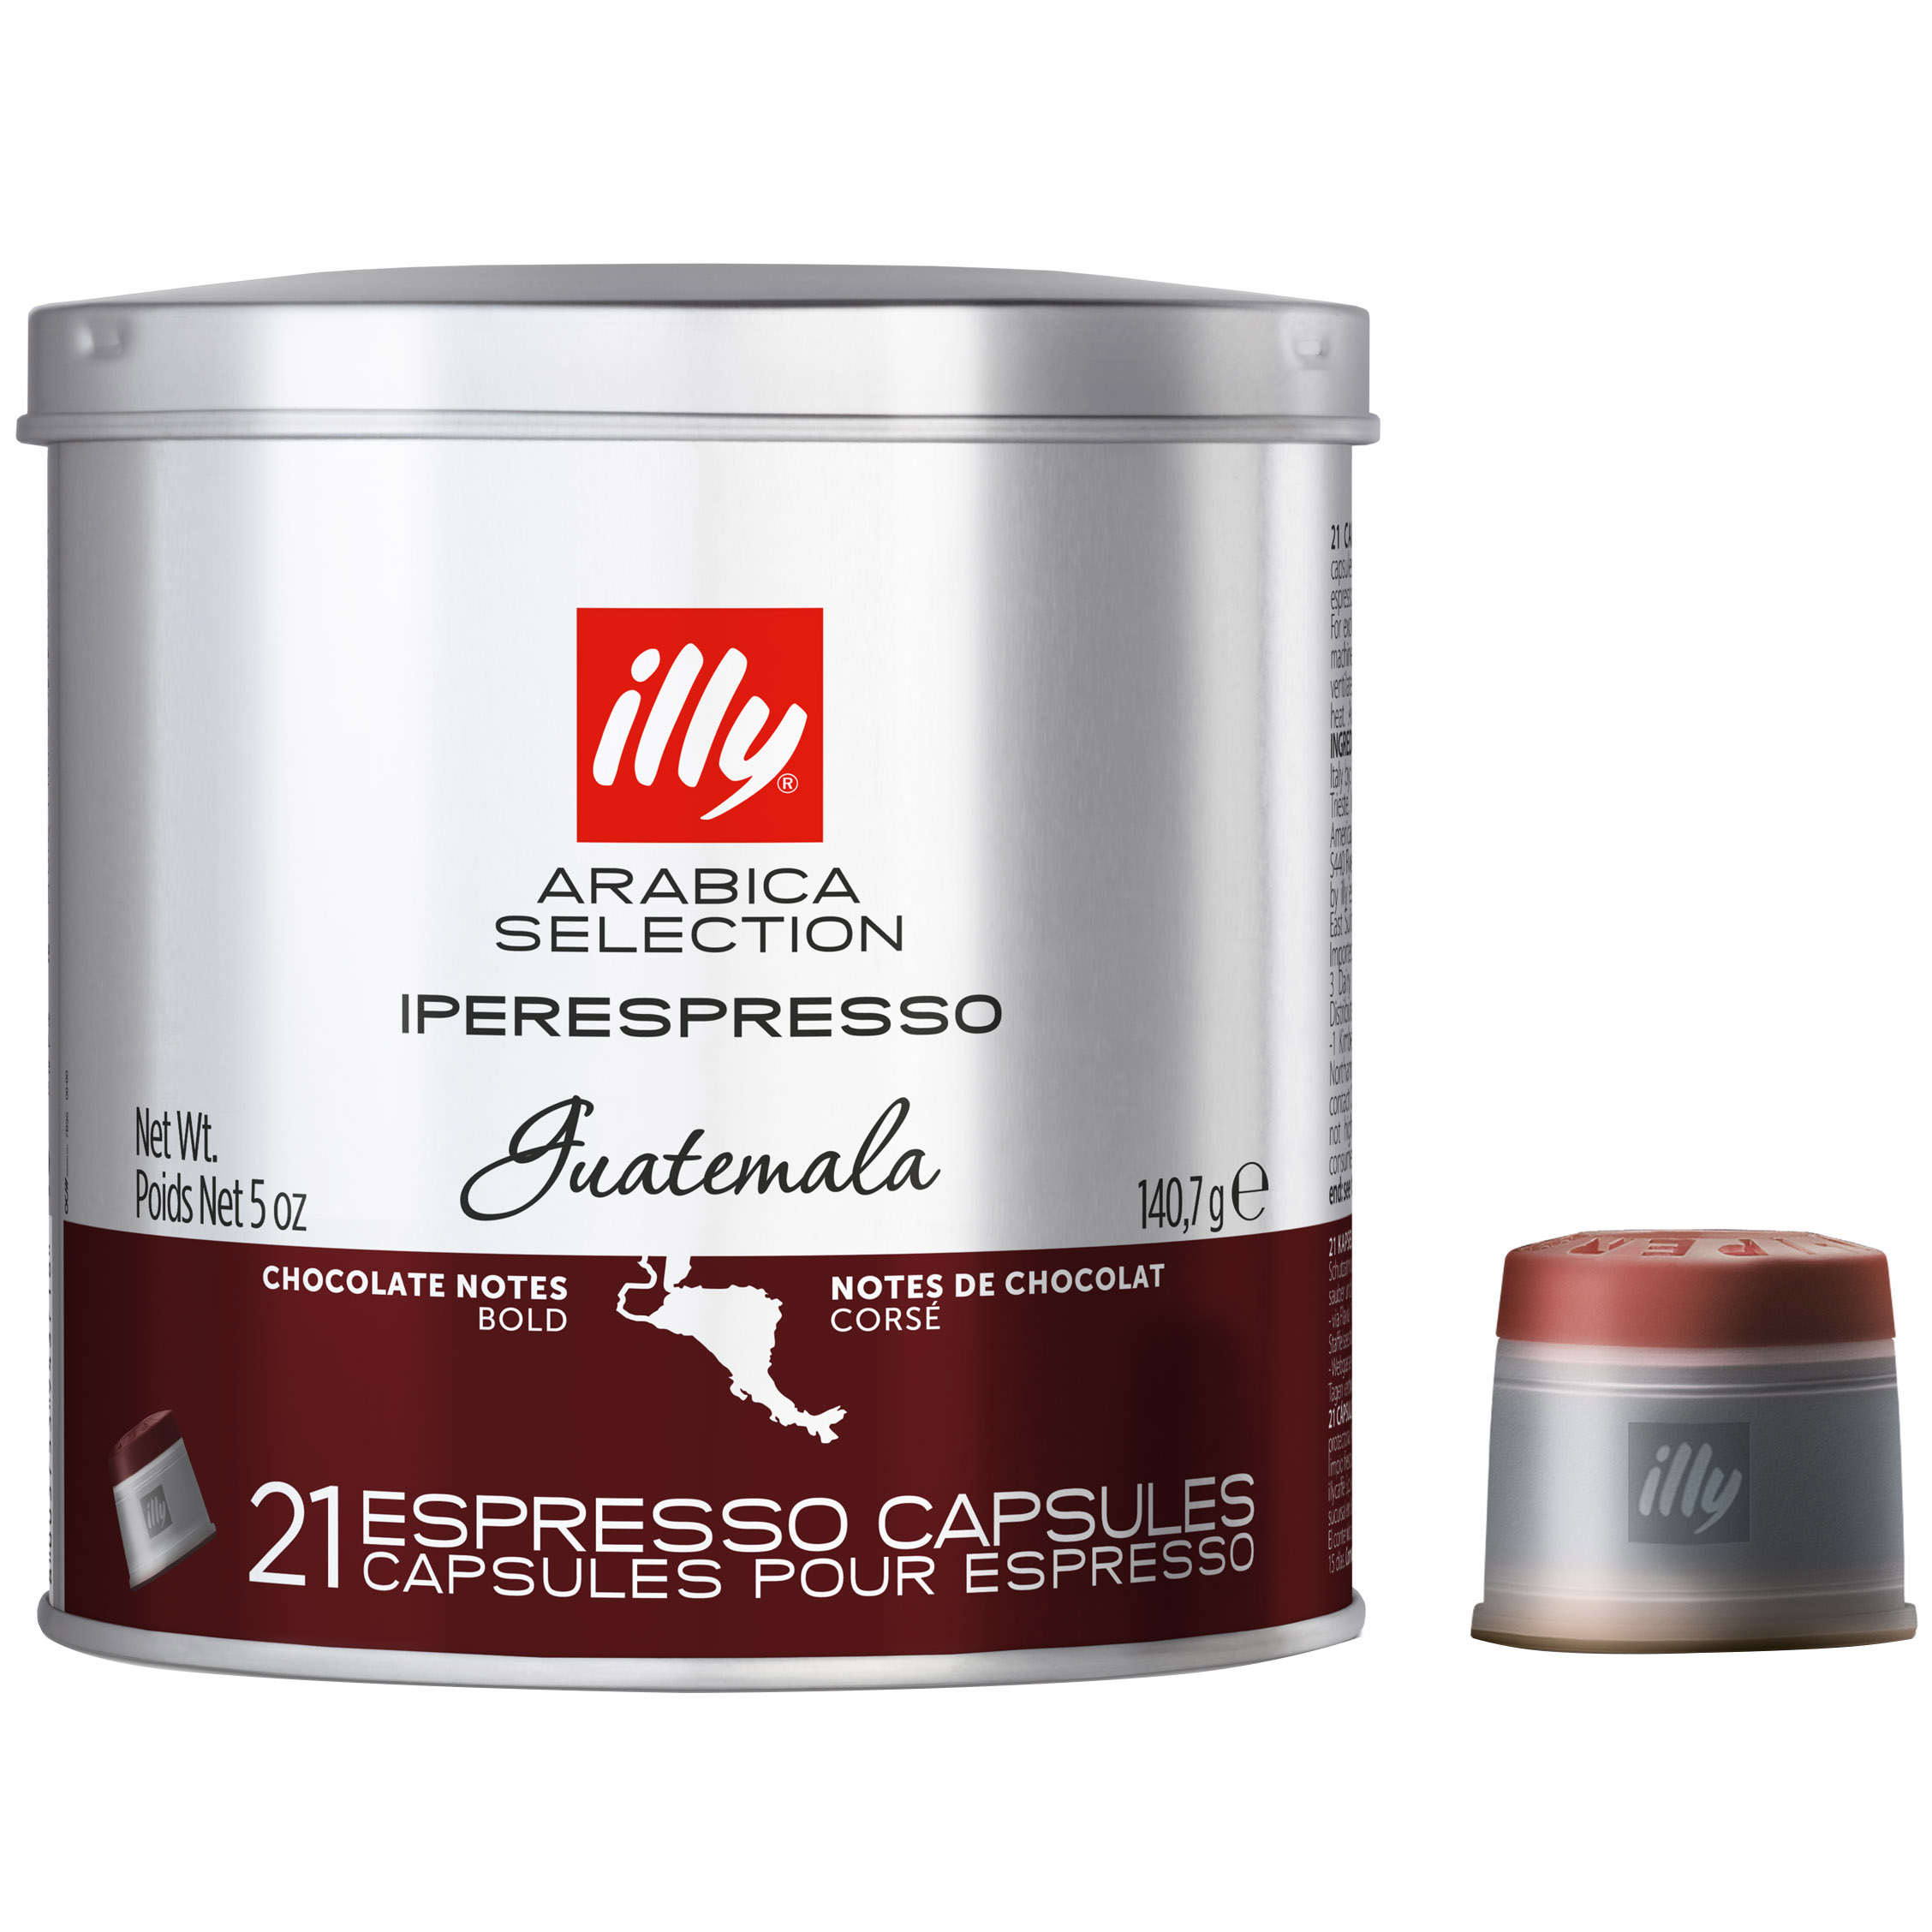 Кава мелена Illy IperEspresso Monoarabica Guatemala Espresso 21 капсула 140.7 г - фото 1